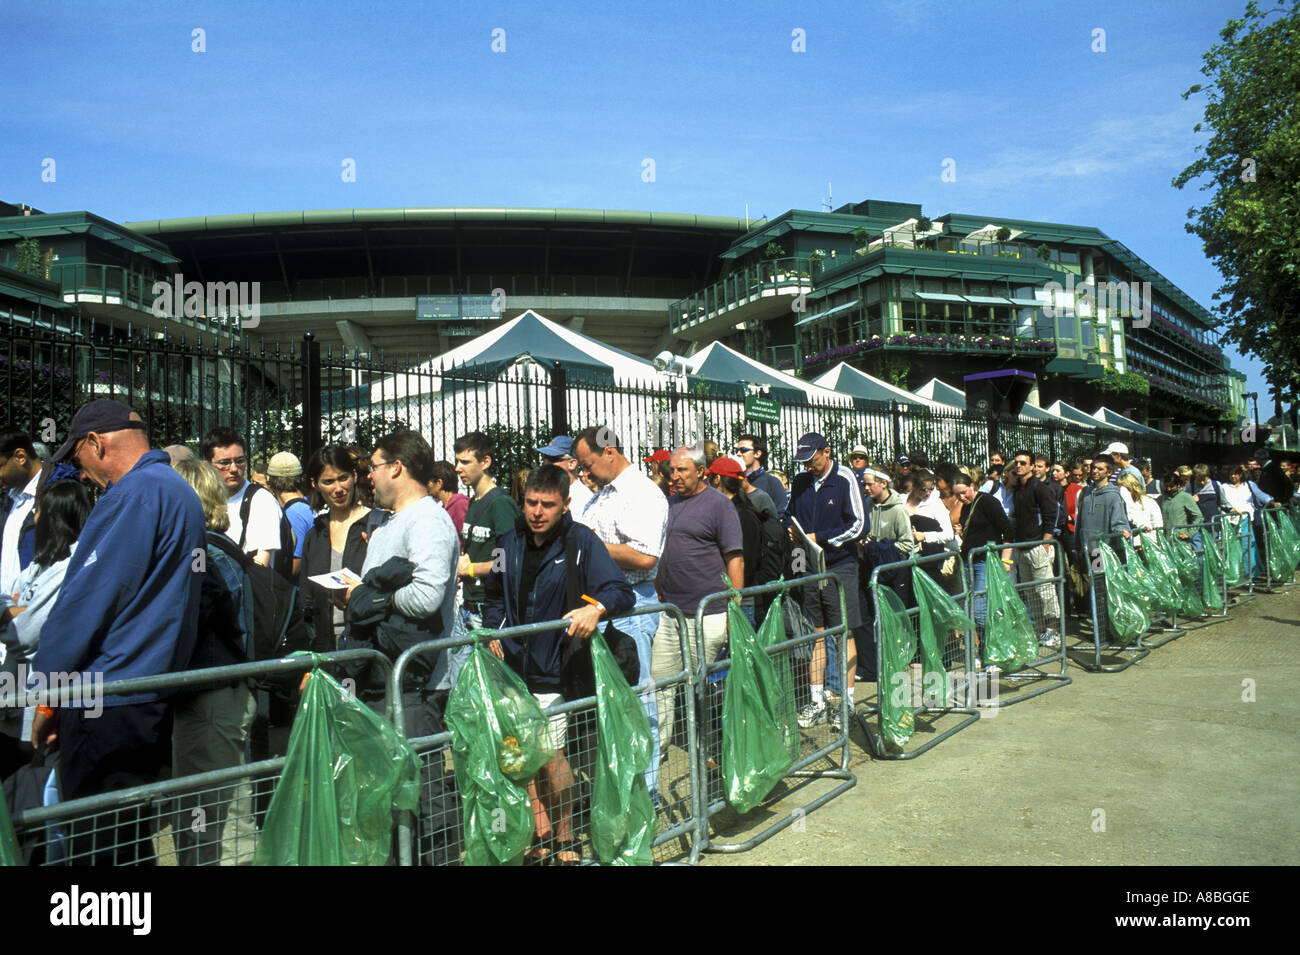 Files d'attente pour tous les championnats de Wimbledon France LawnTennis. Juillet 2005 Banque D'Images